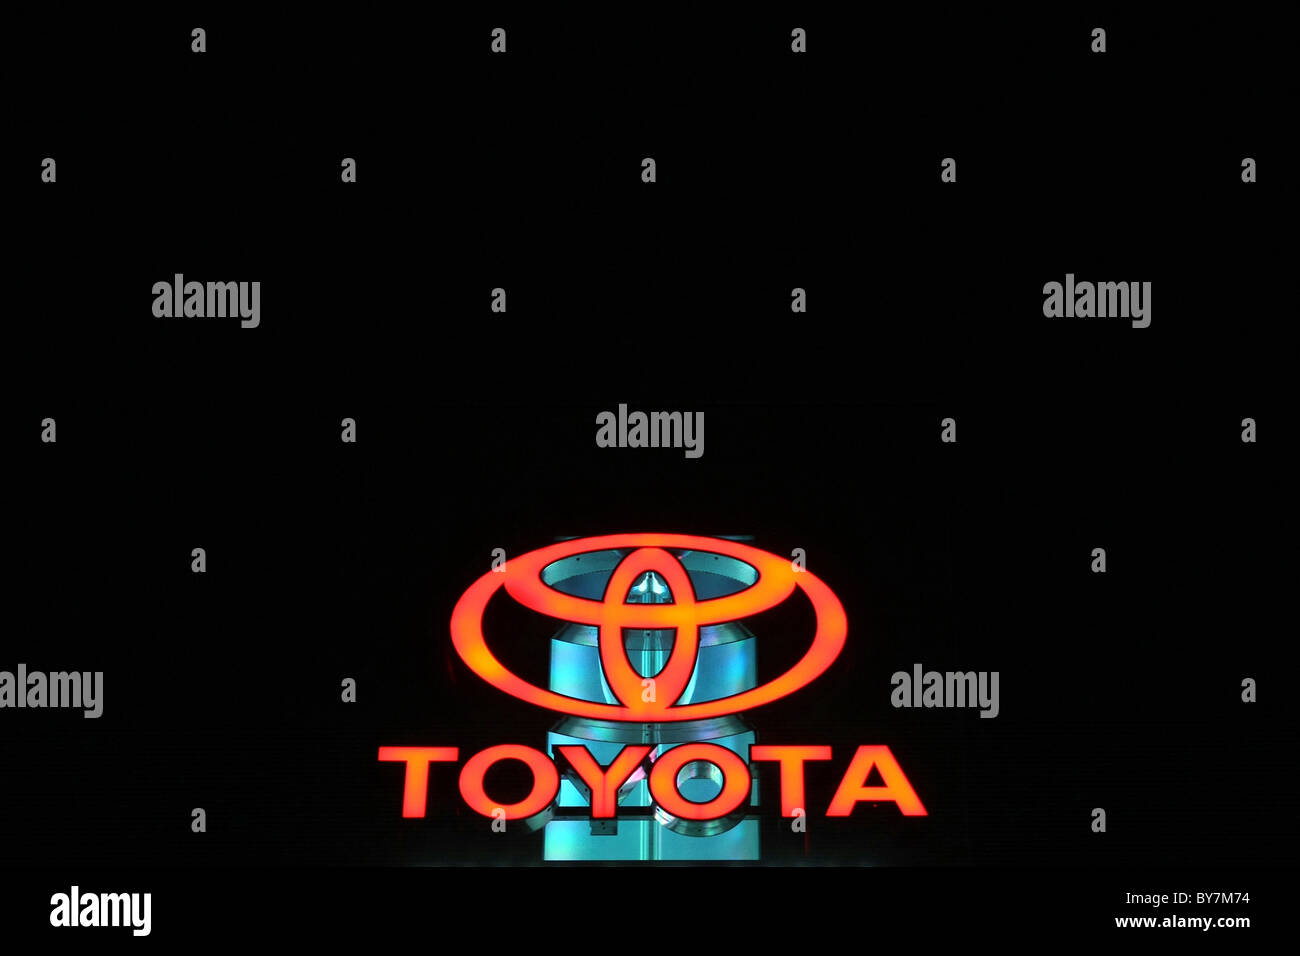 Toyota logo Stock Photo